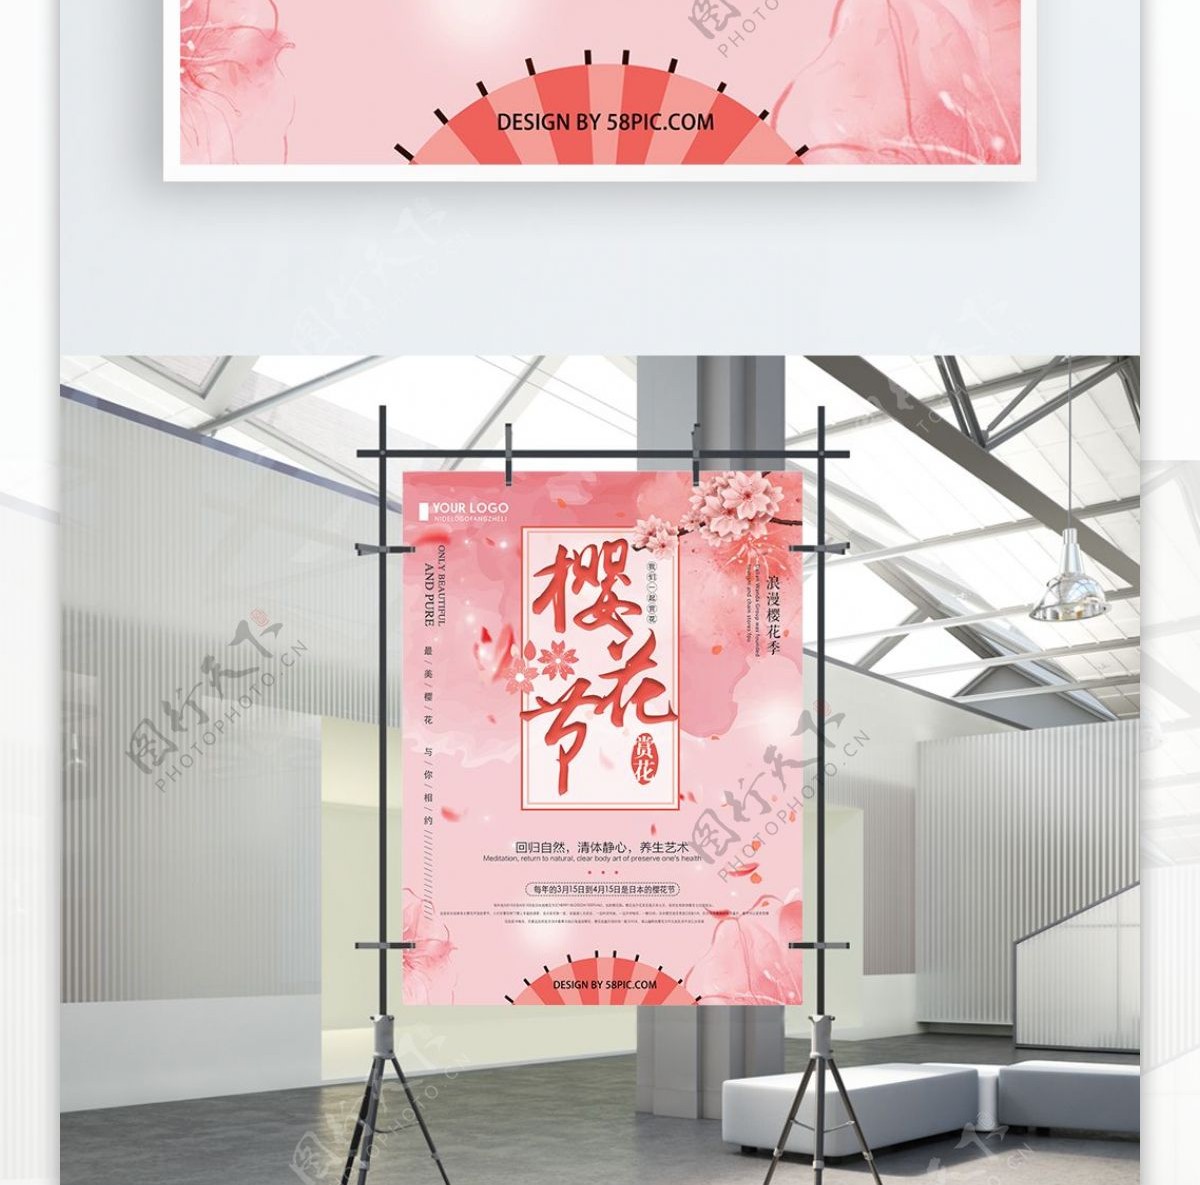 粉色创意简约樱花节宣传海报